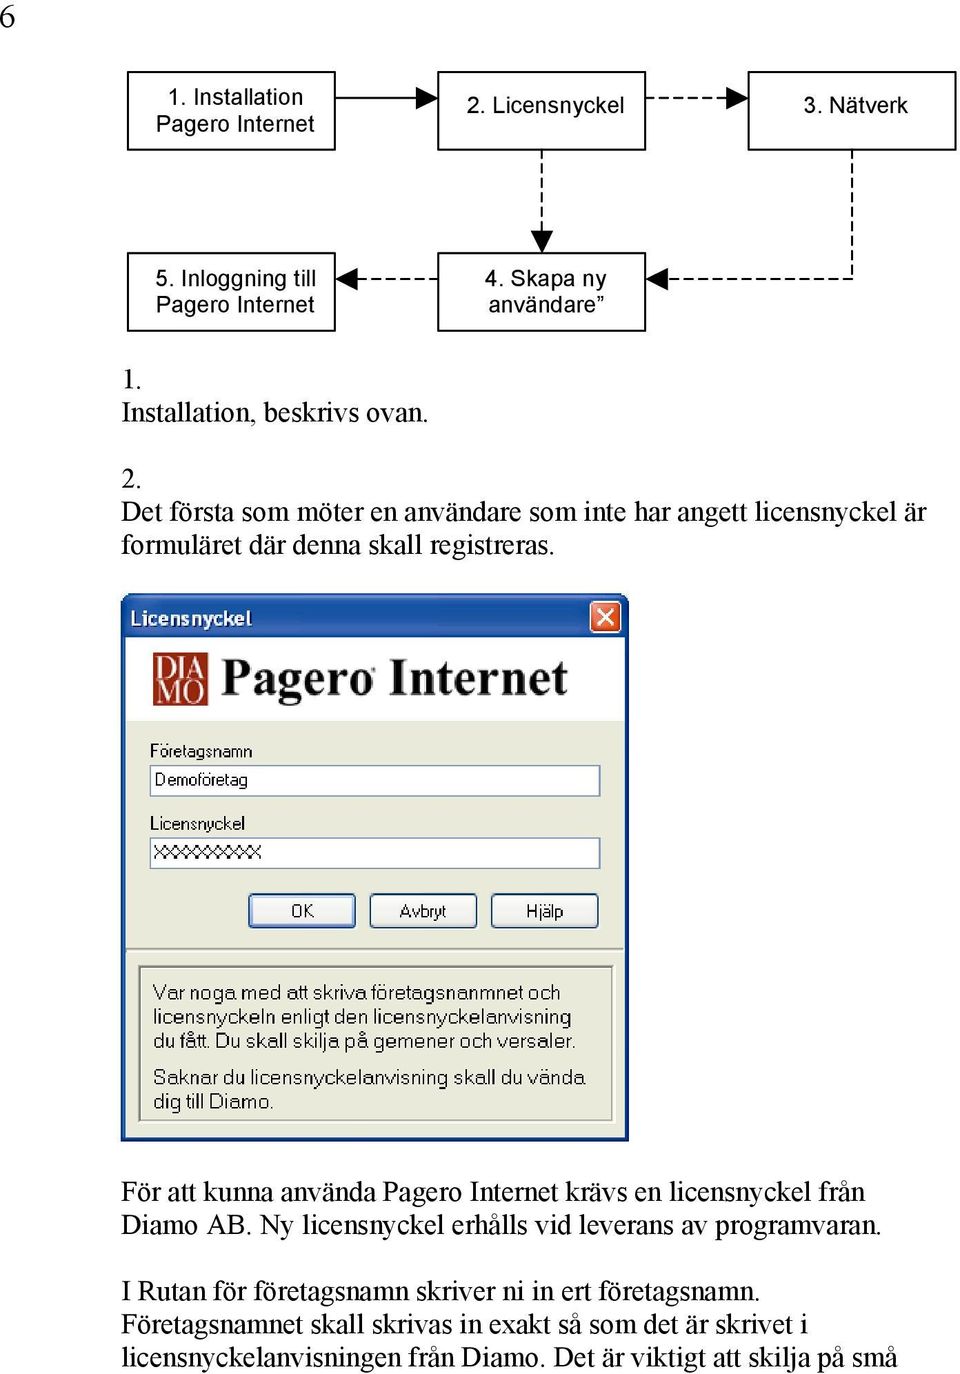 För att kunna använda Pagero Internet krävs en licensnyckel från Diamo AB. Ny licensnyckel erhålls vid leverans av programvaran.